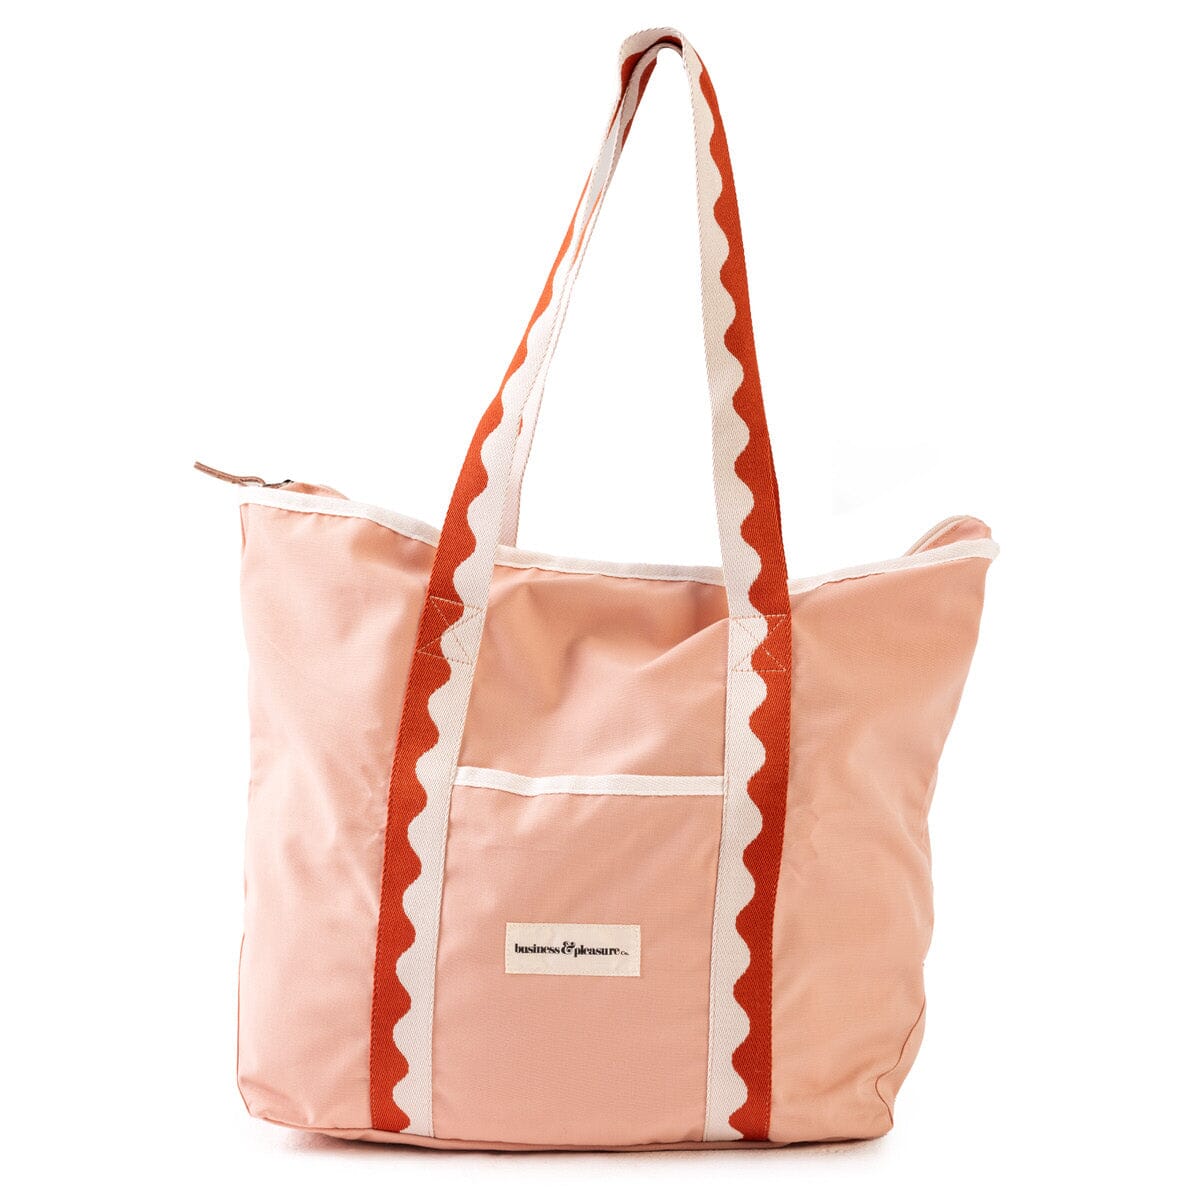 The Beach Bag - Rivie Pink Beach Bag Business & Pleasure Co Aus 